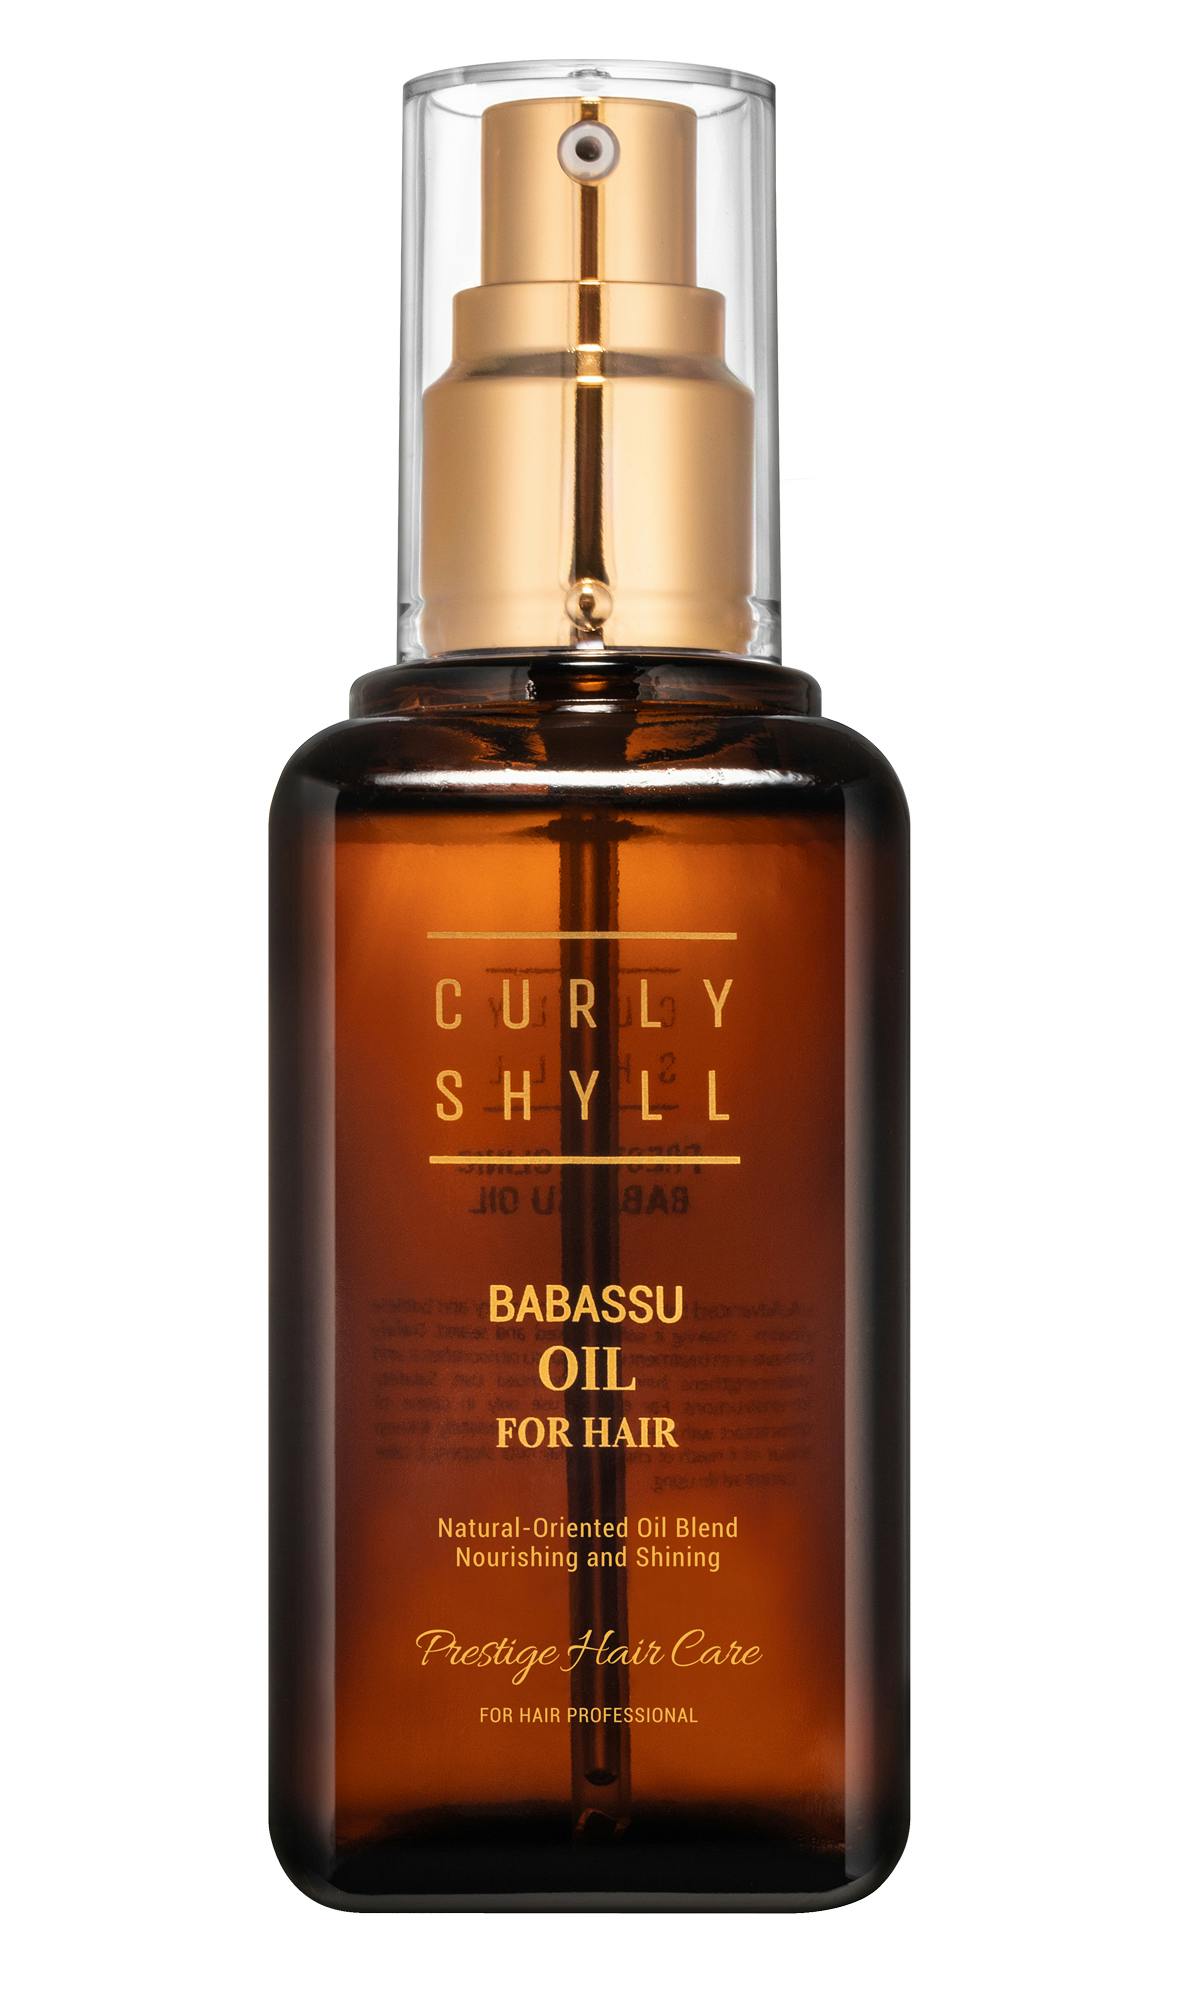 Curly Shyll Babassu Oil Олія бабасу для волосся